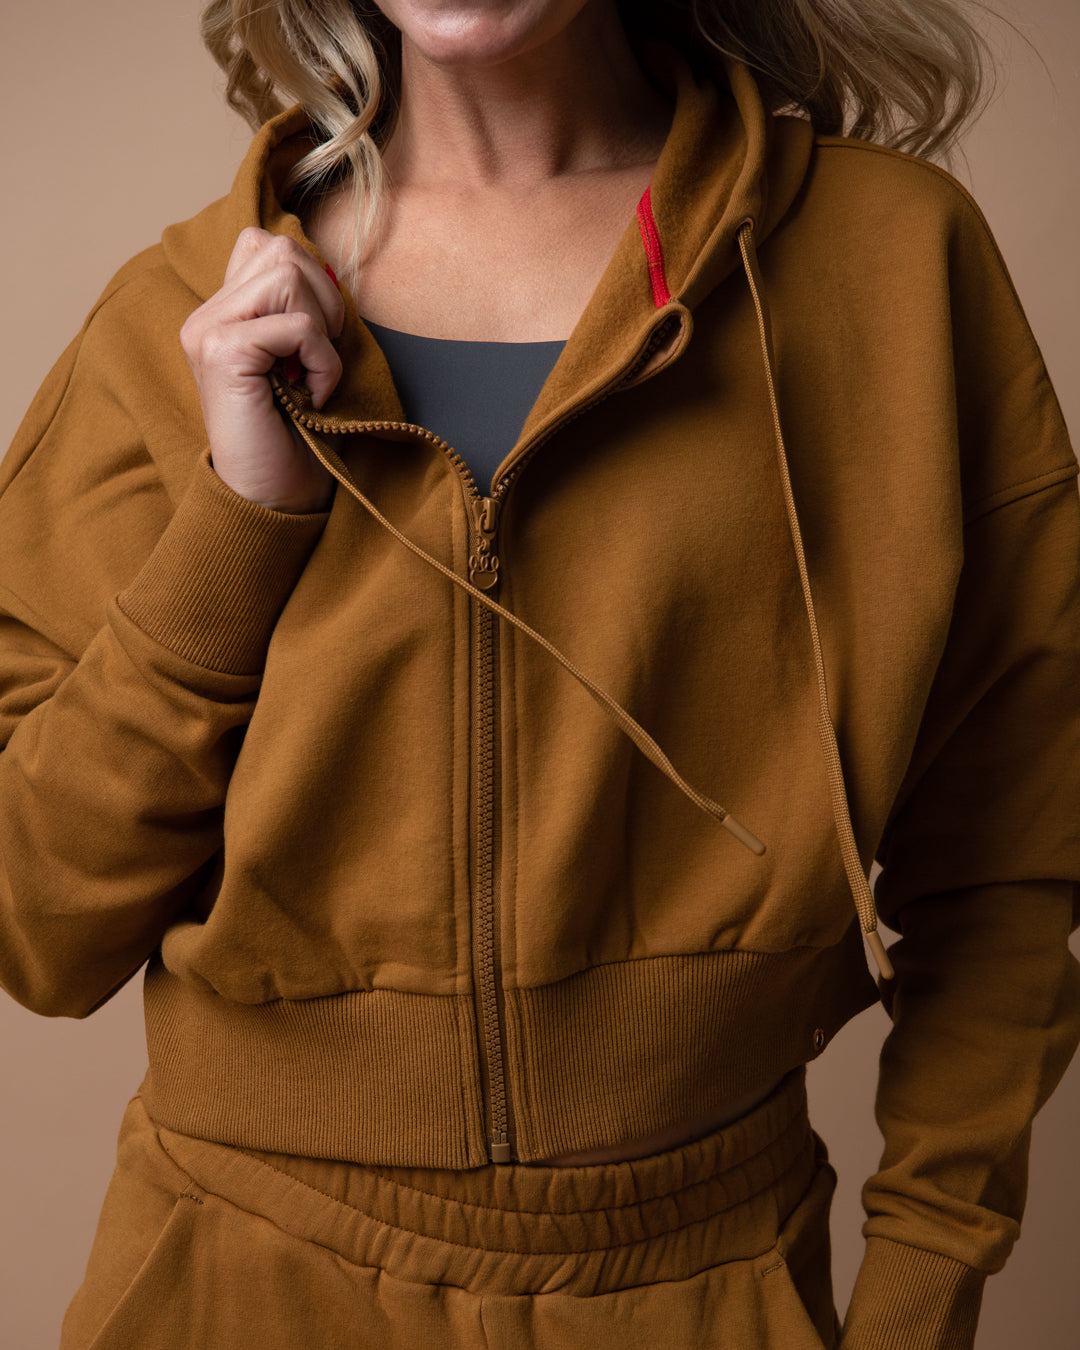 KADYLUXE® womens fleece zip hoodie in camel color front view